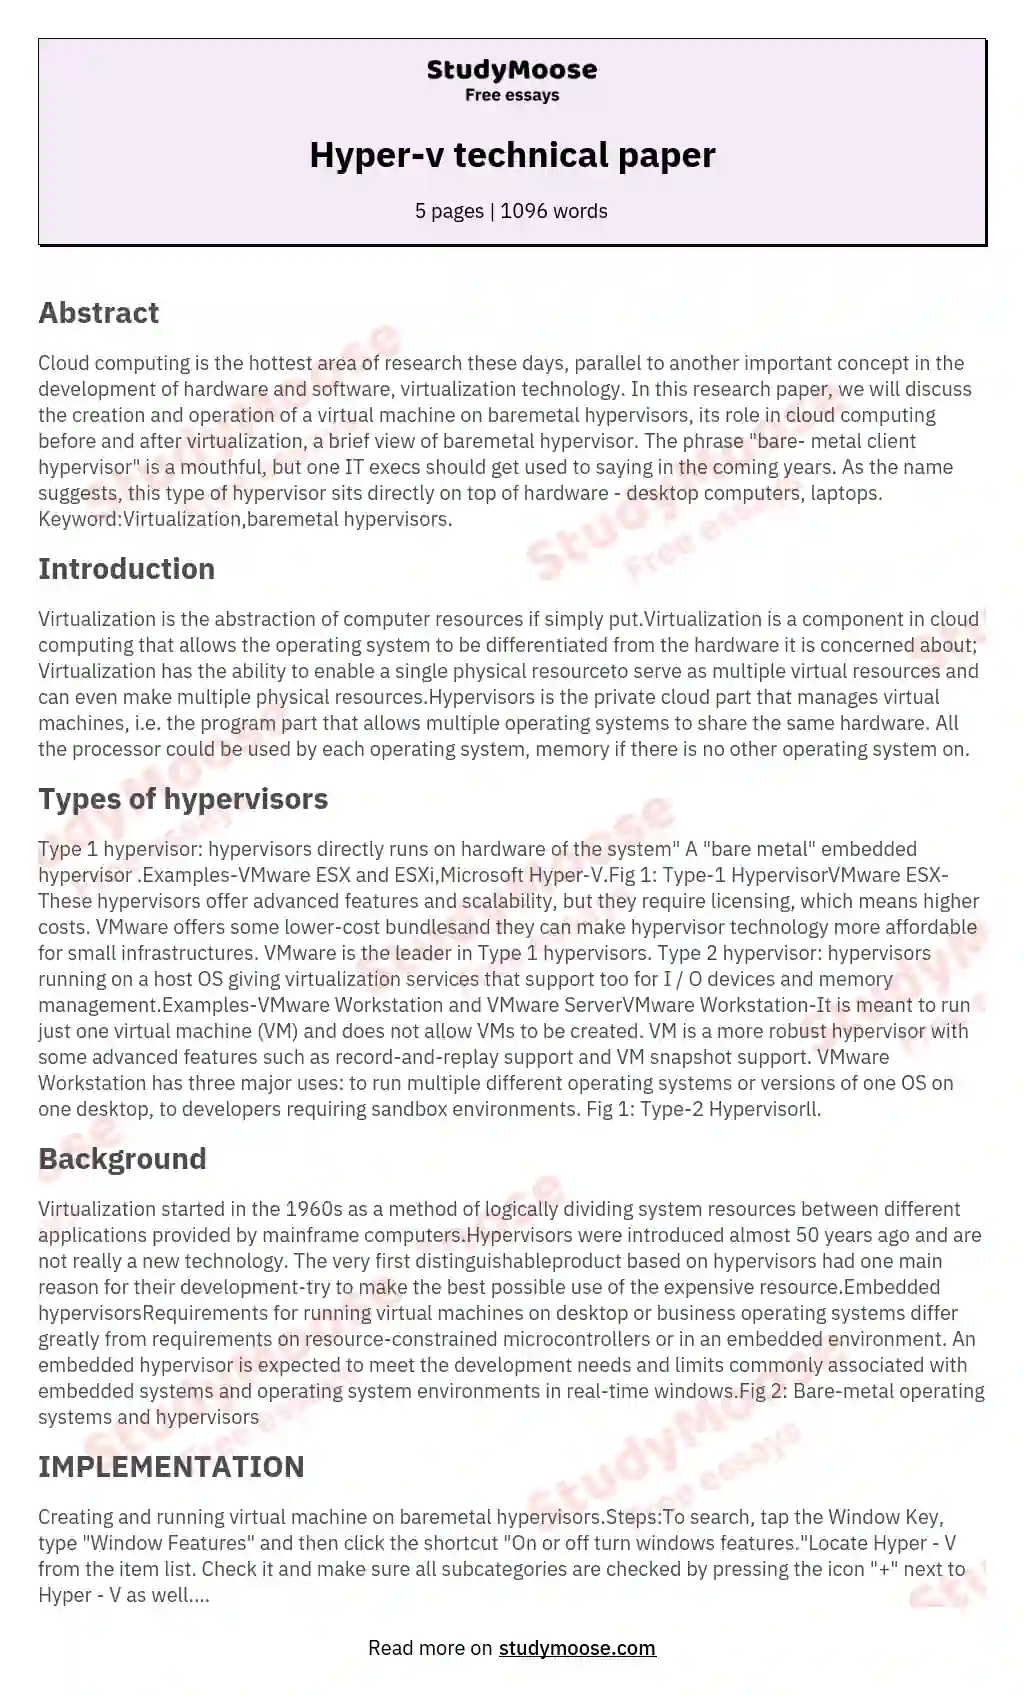 Hyper-v technical paper essay